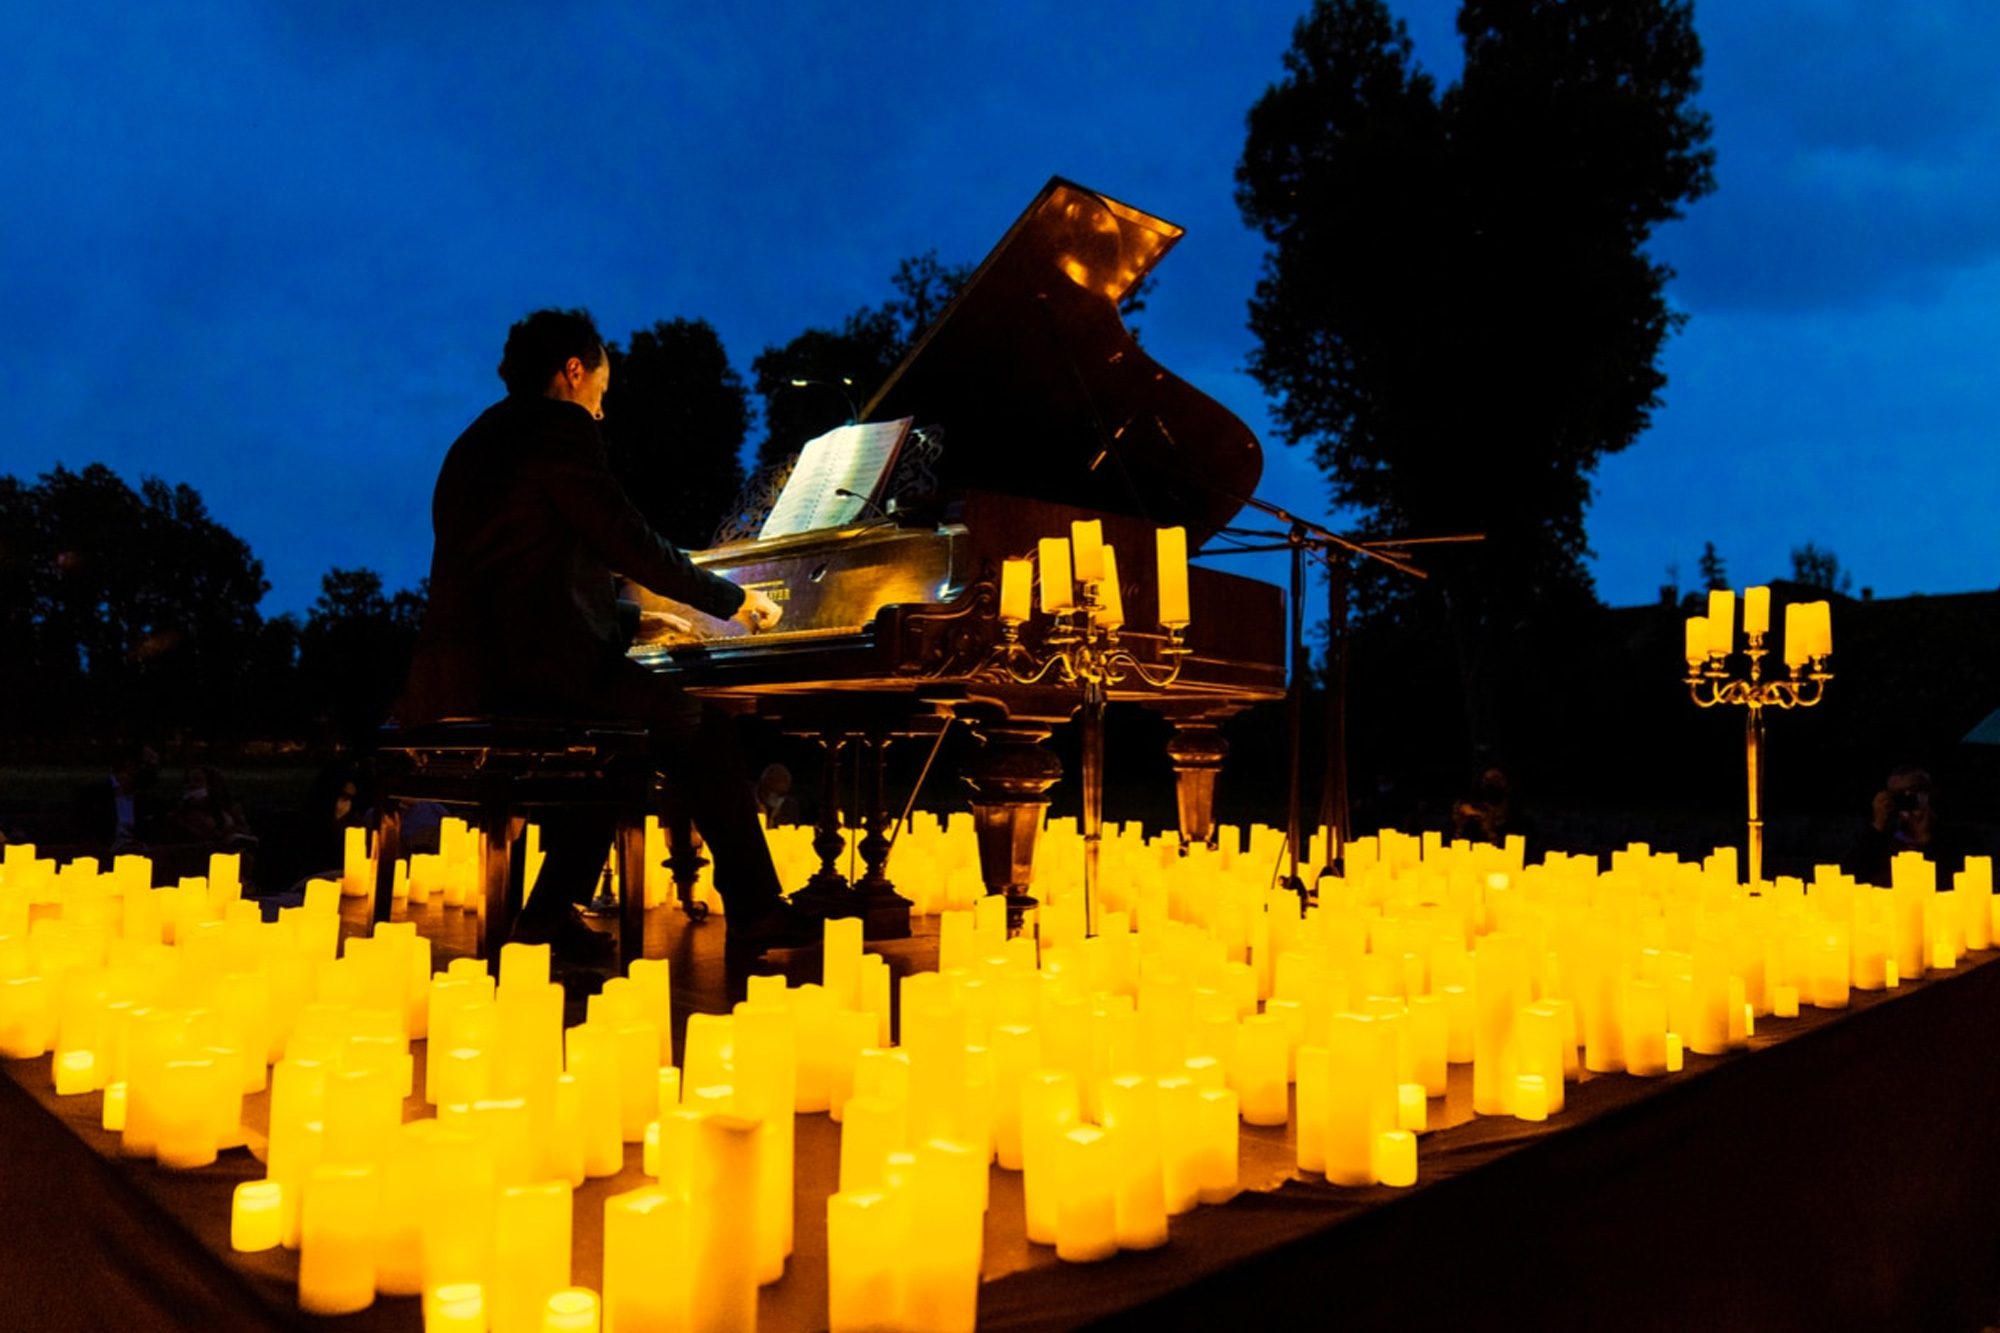 Candlelight, concerto in Villa Moroni: Ennio Morricone. Un pianista suona sotto il cielo serale circondato da candele